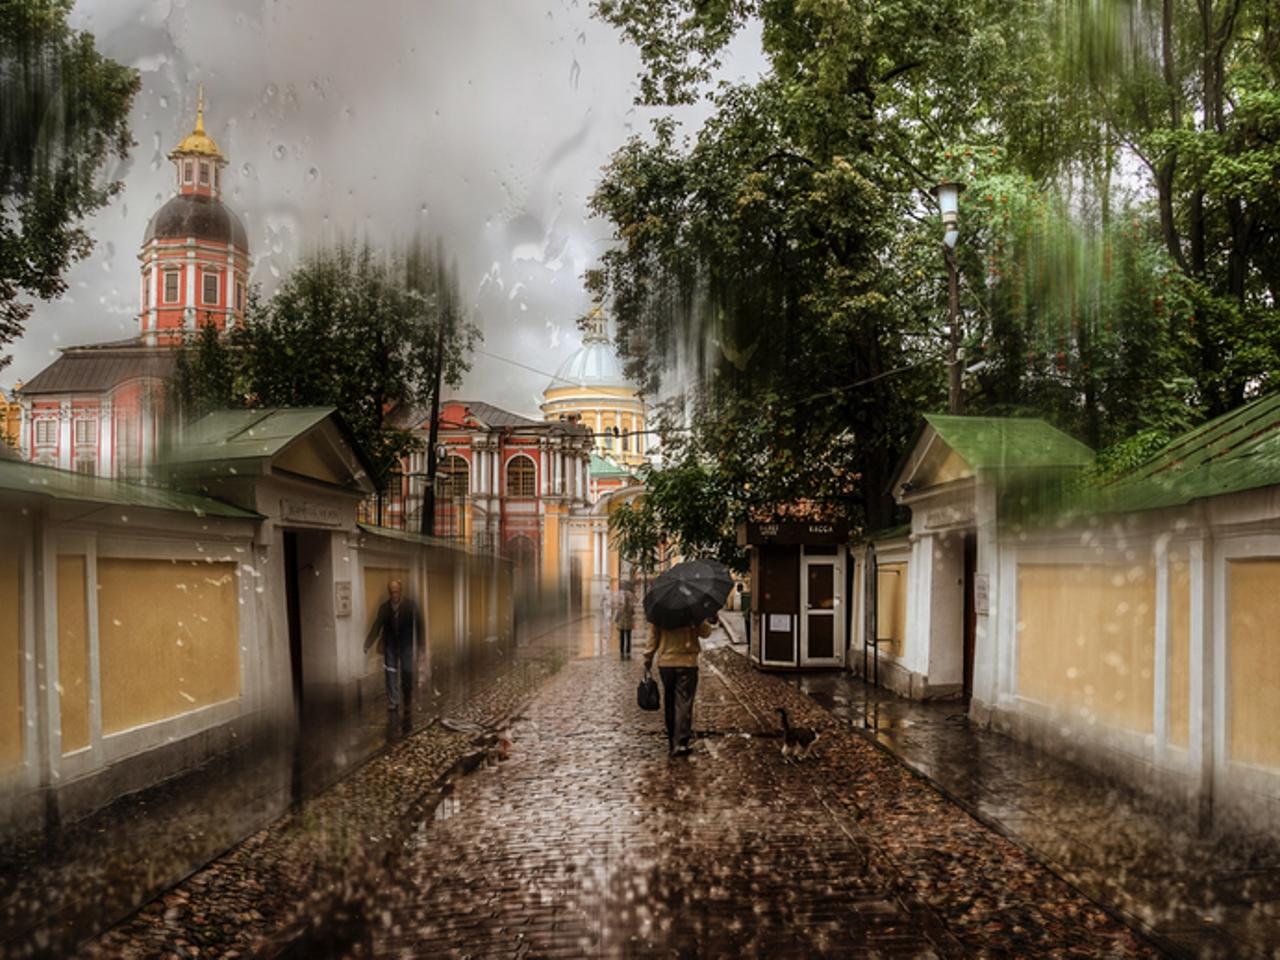 обои Дождь в городе фото